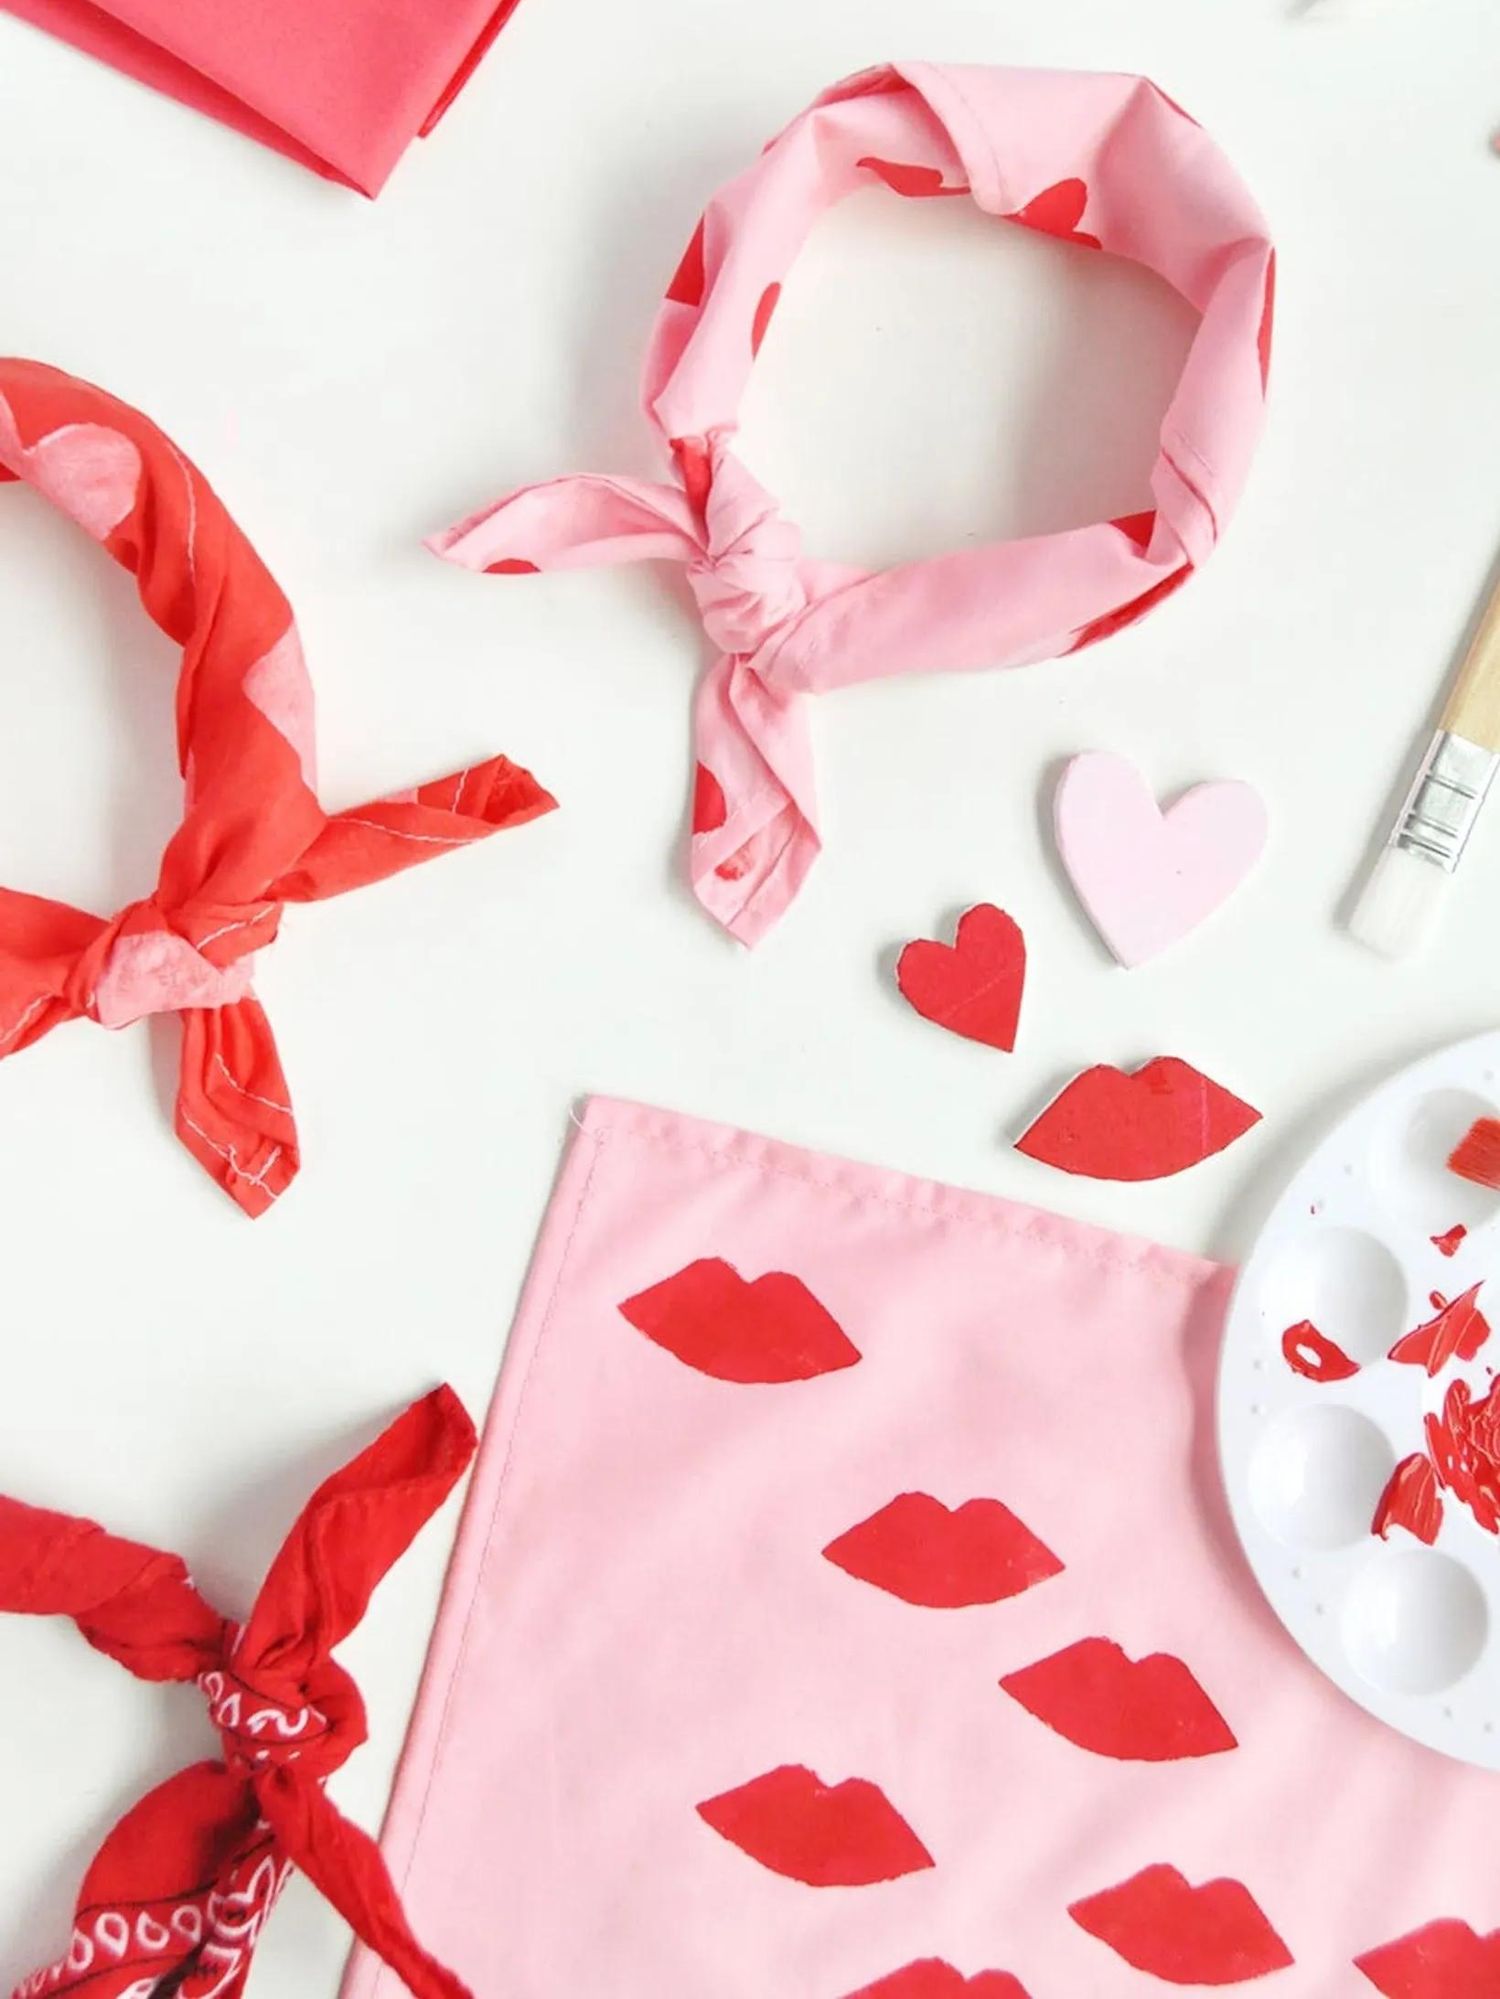 handstamped scarf diy valentine's gift idea